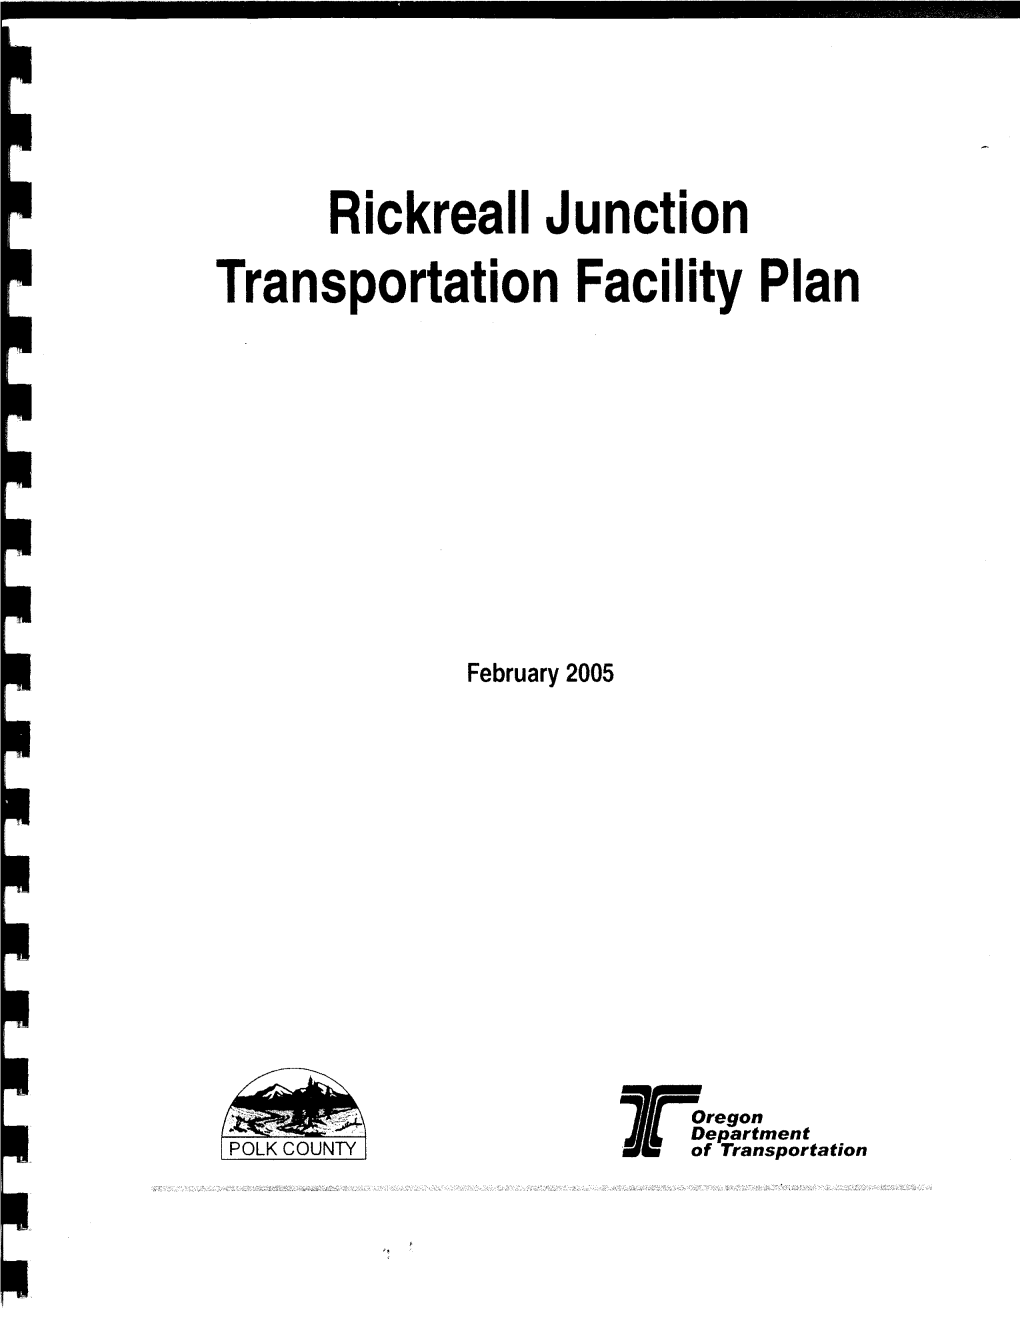 Rickreall Junction Transportation Facility Plan